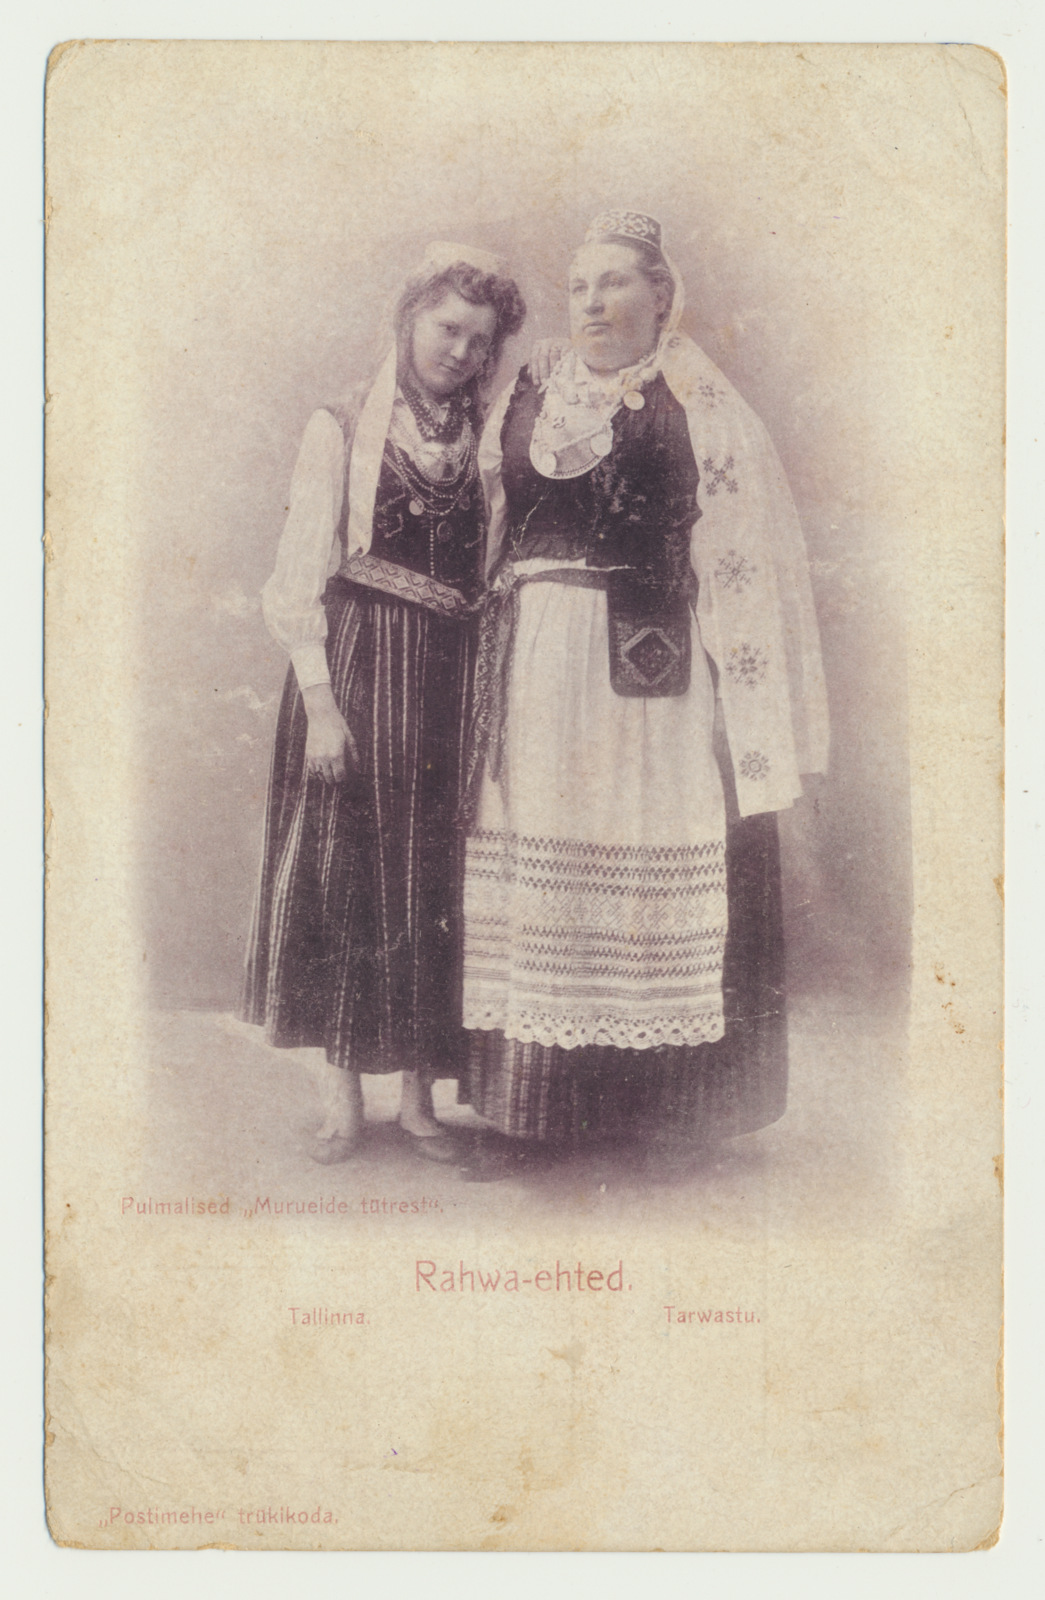 trükipostkaart, rahvariided, Tarvastu naine ja Tallinna naine (pulmalised Murueide tütrest), u 1910